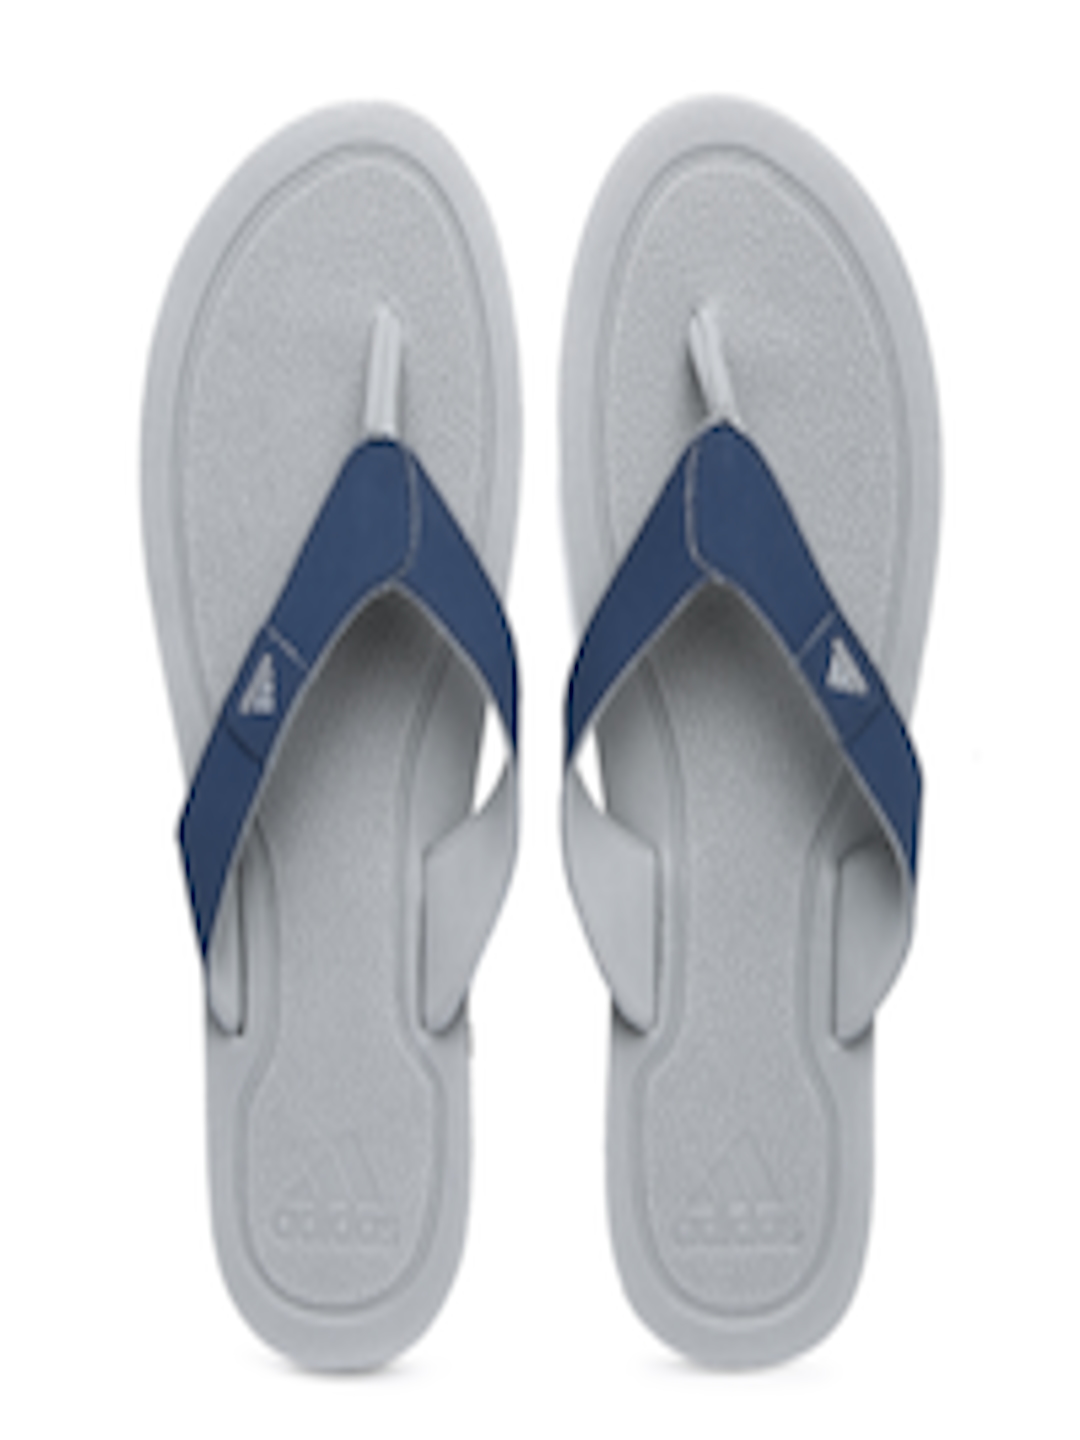 Buy ADIDAS Men Navy Blue & Grey Flip Flops - Flip Flops for Men 1501477 ...